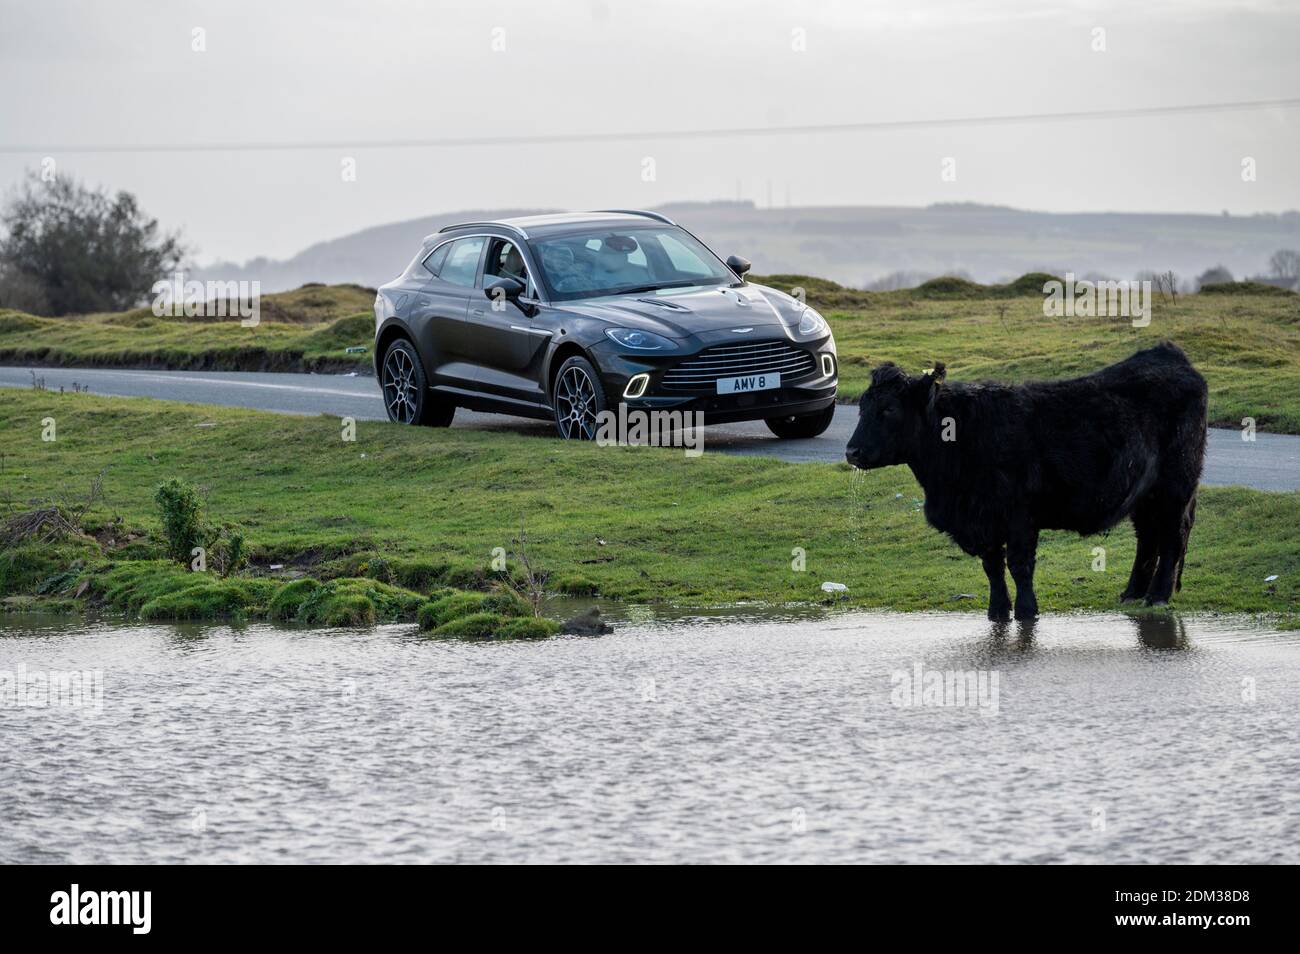 Un vus V8 Aston Martin DBX de 4 litres avec une vitesse maximale de 180 km/h et un prix à partir de 158,000 £ sur les sommets montagneux du sud du pays de Galles. Banque D'Images